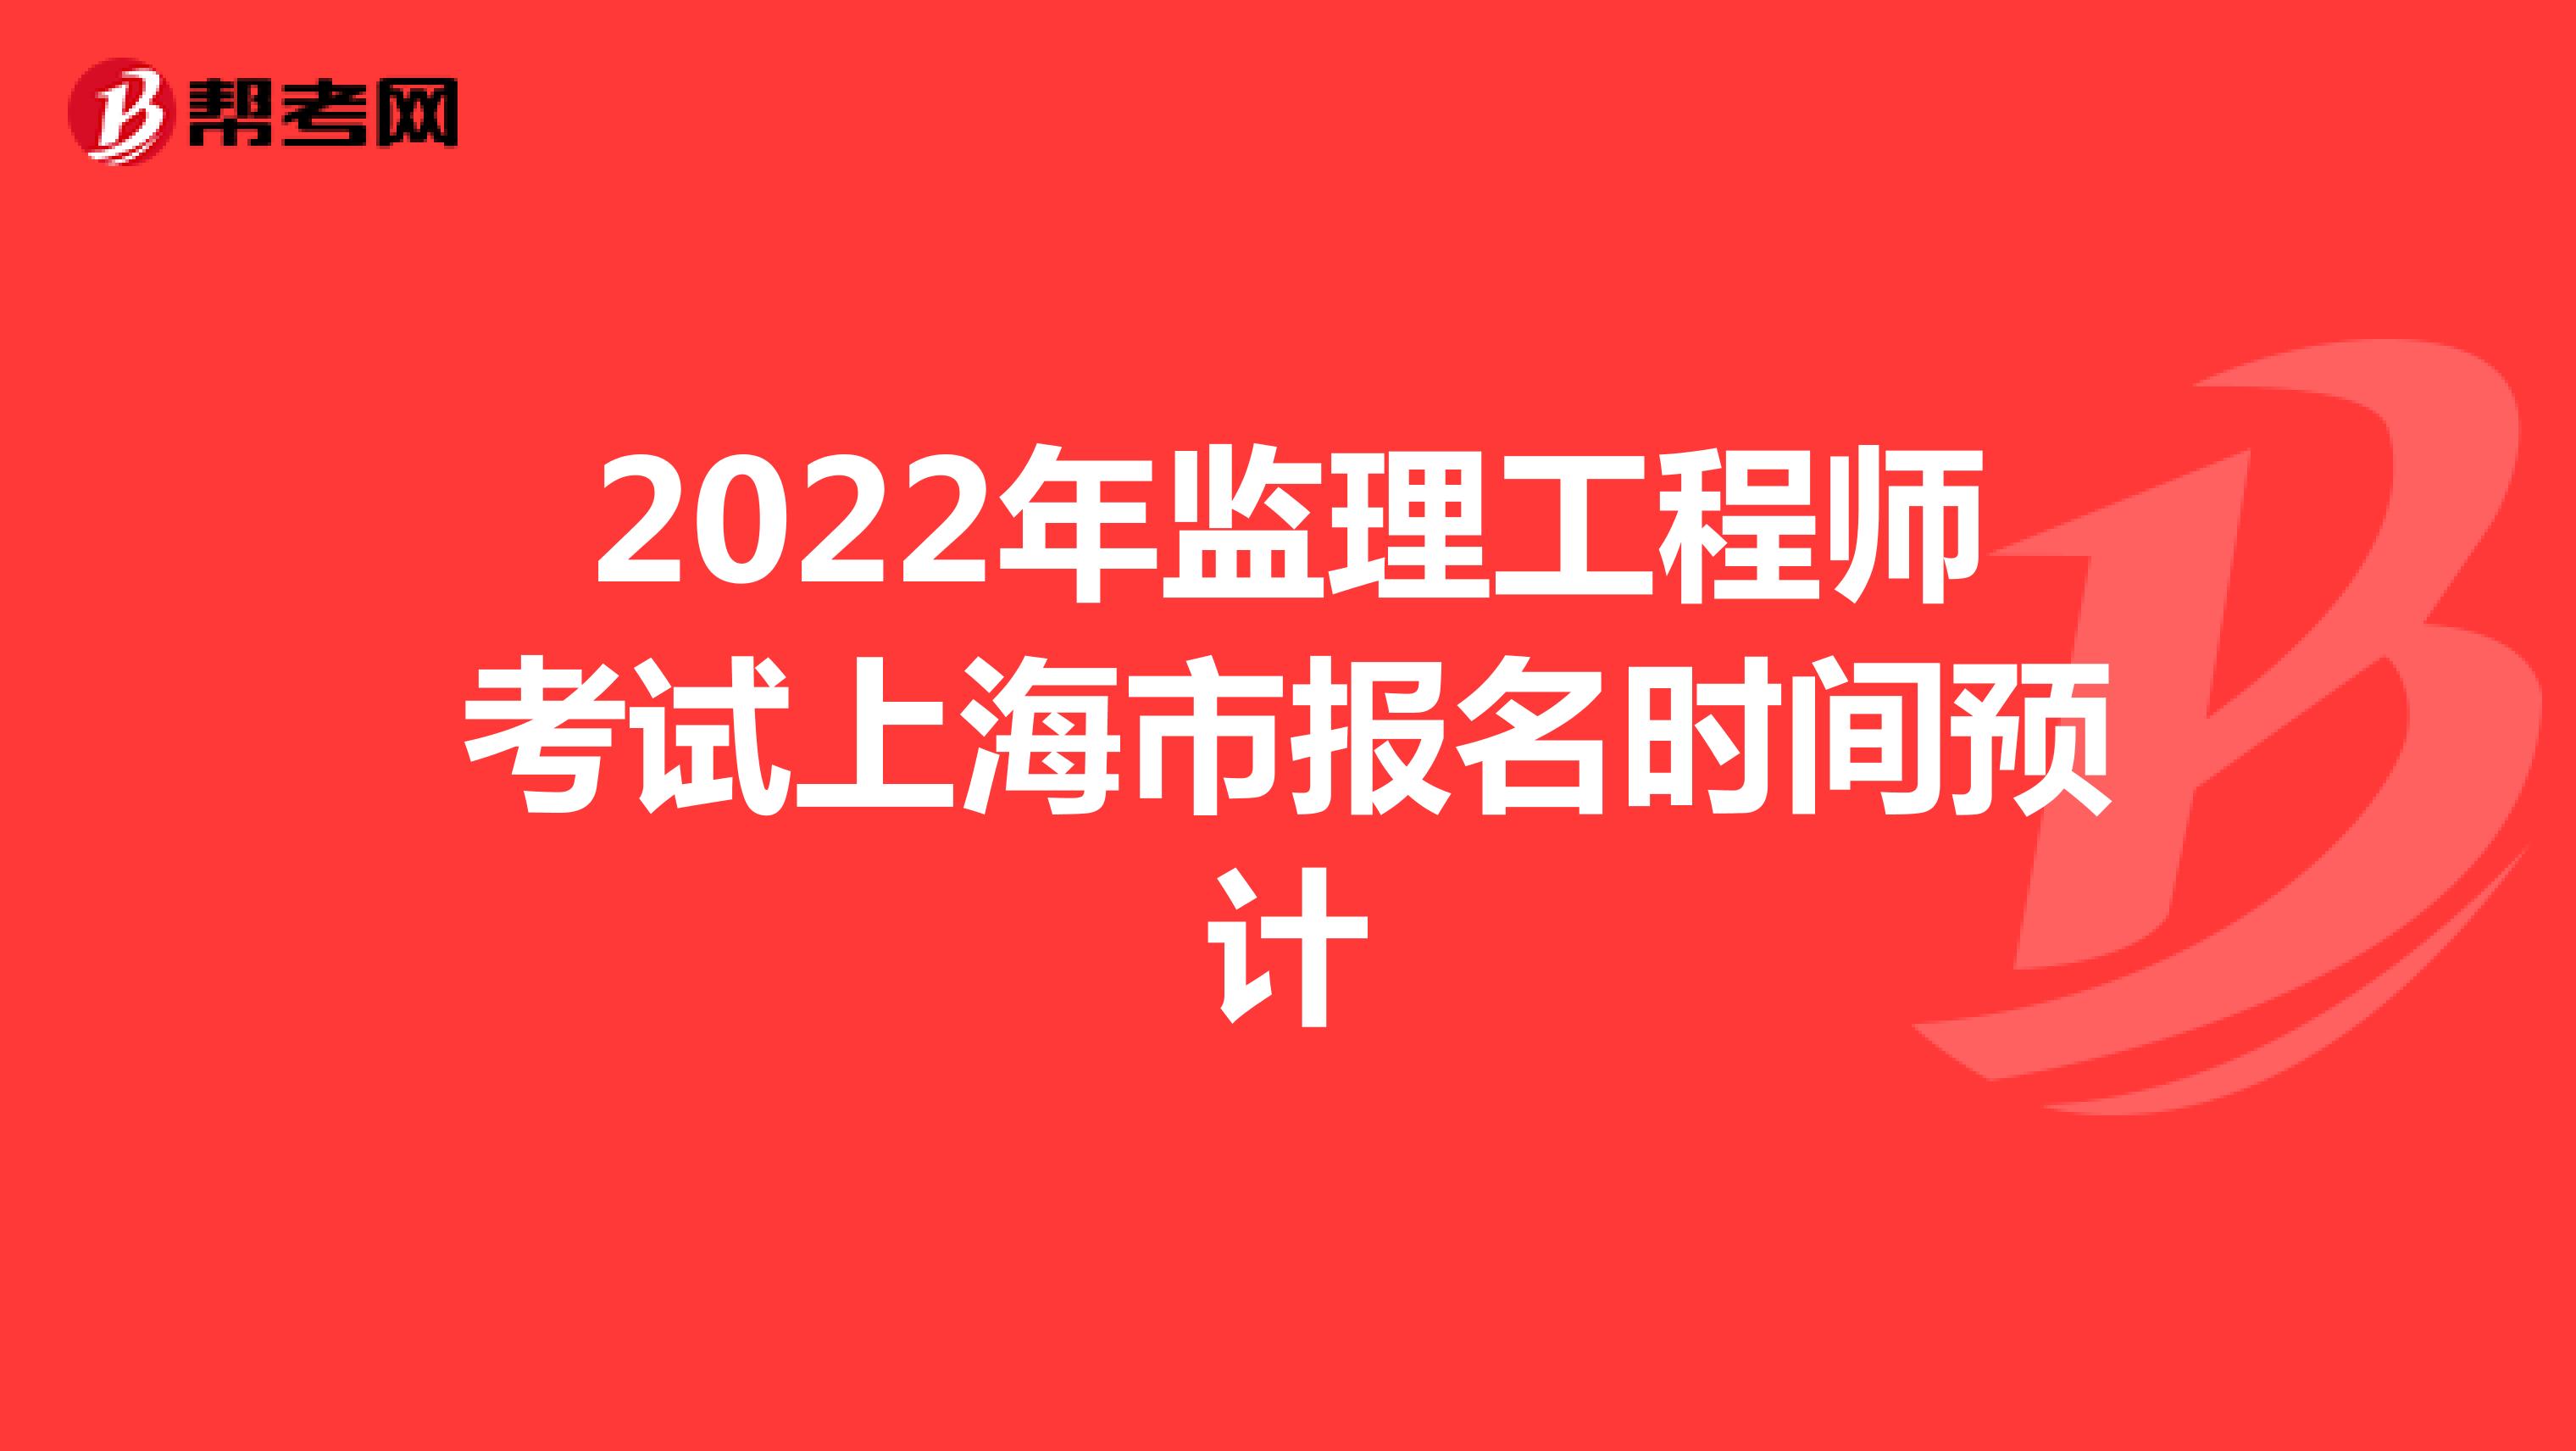 2022年监理工程师考试上海市报名时间预计